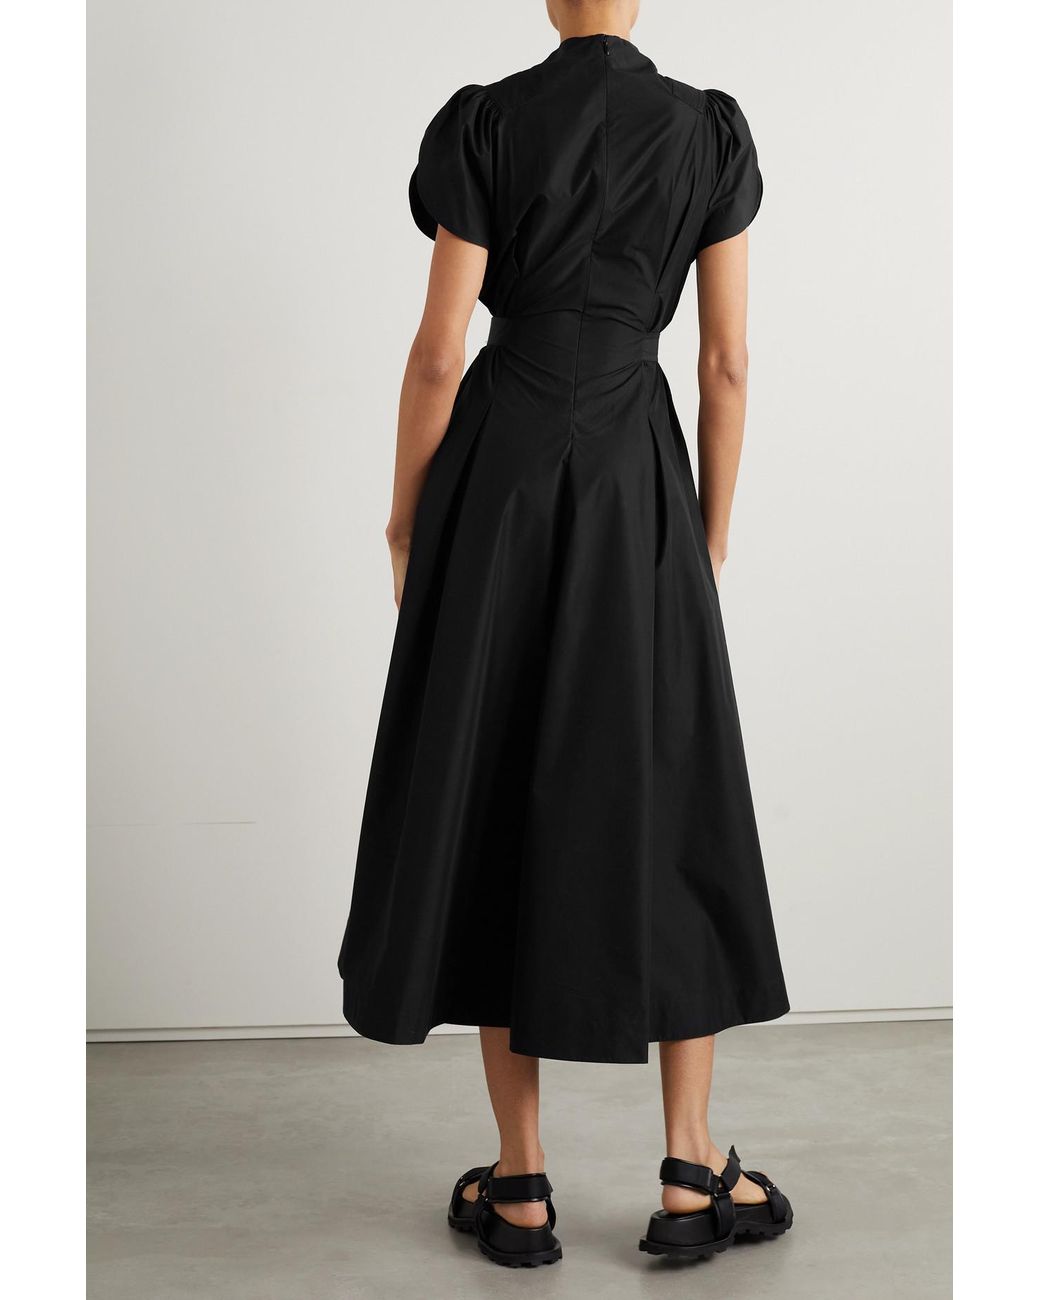 3.1 Phillip Lim Pleated Cotton-blend Poplin Midi Dress in Black | Lyst